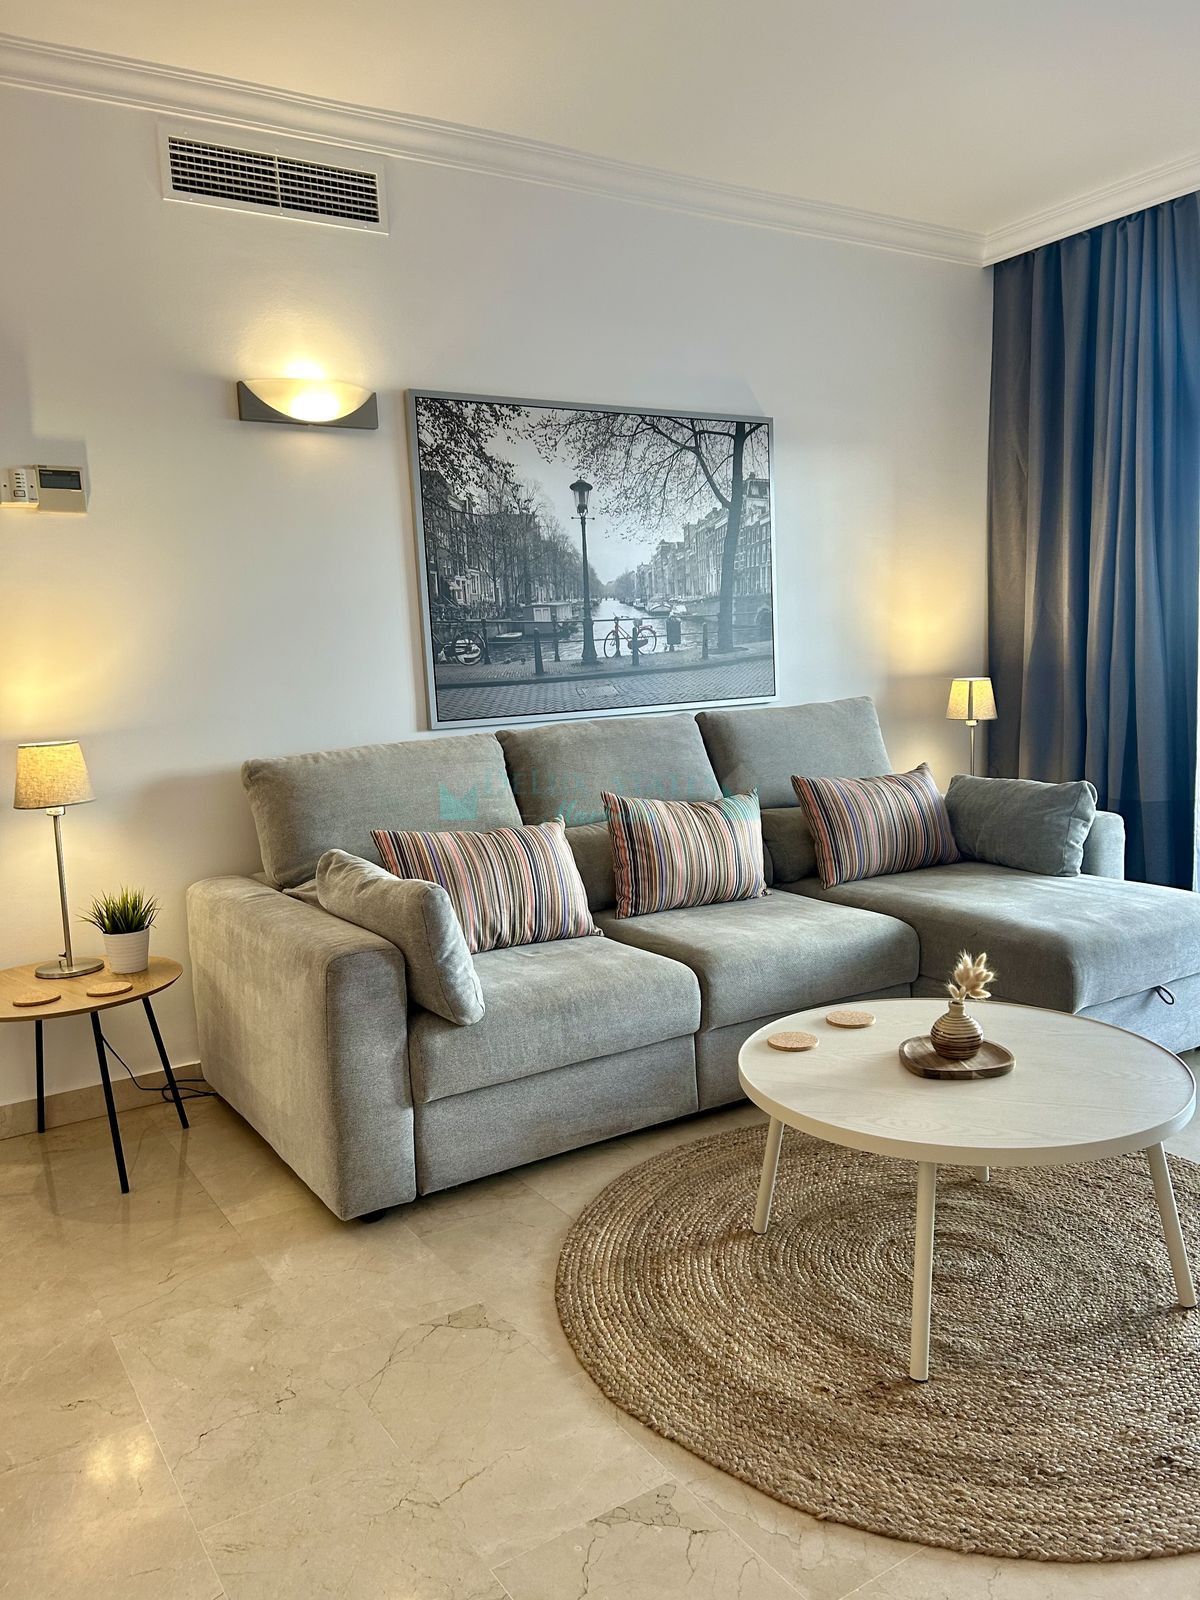 Ground Floor Apartment for sale in Nueva Andalucia